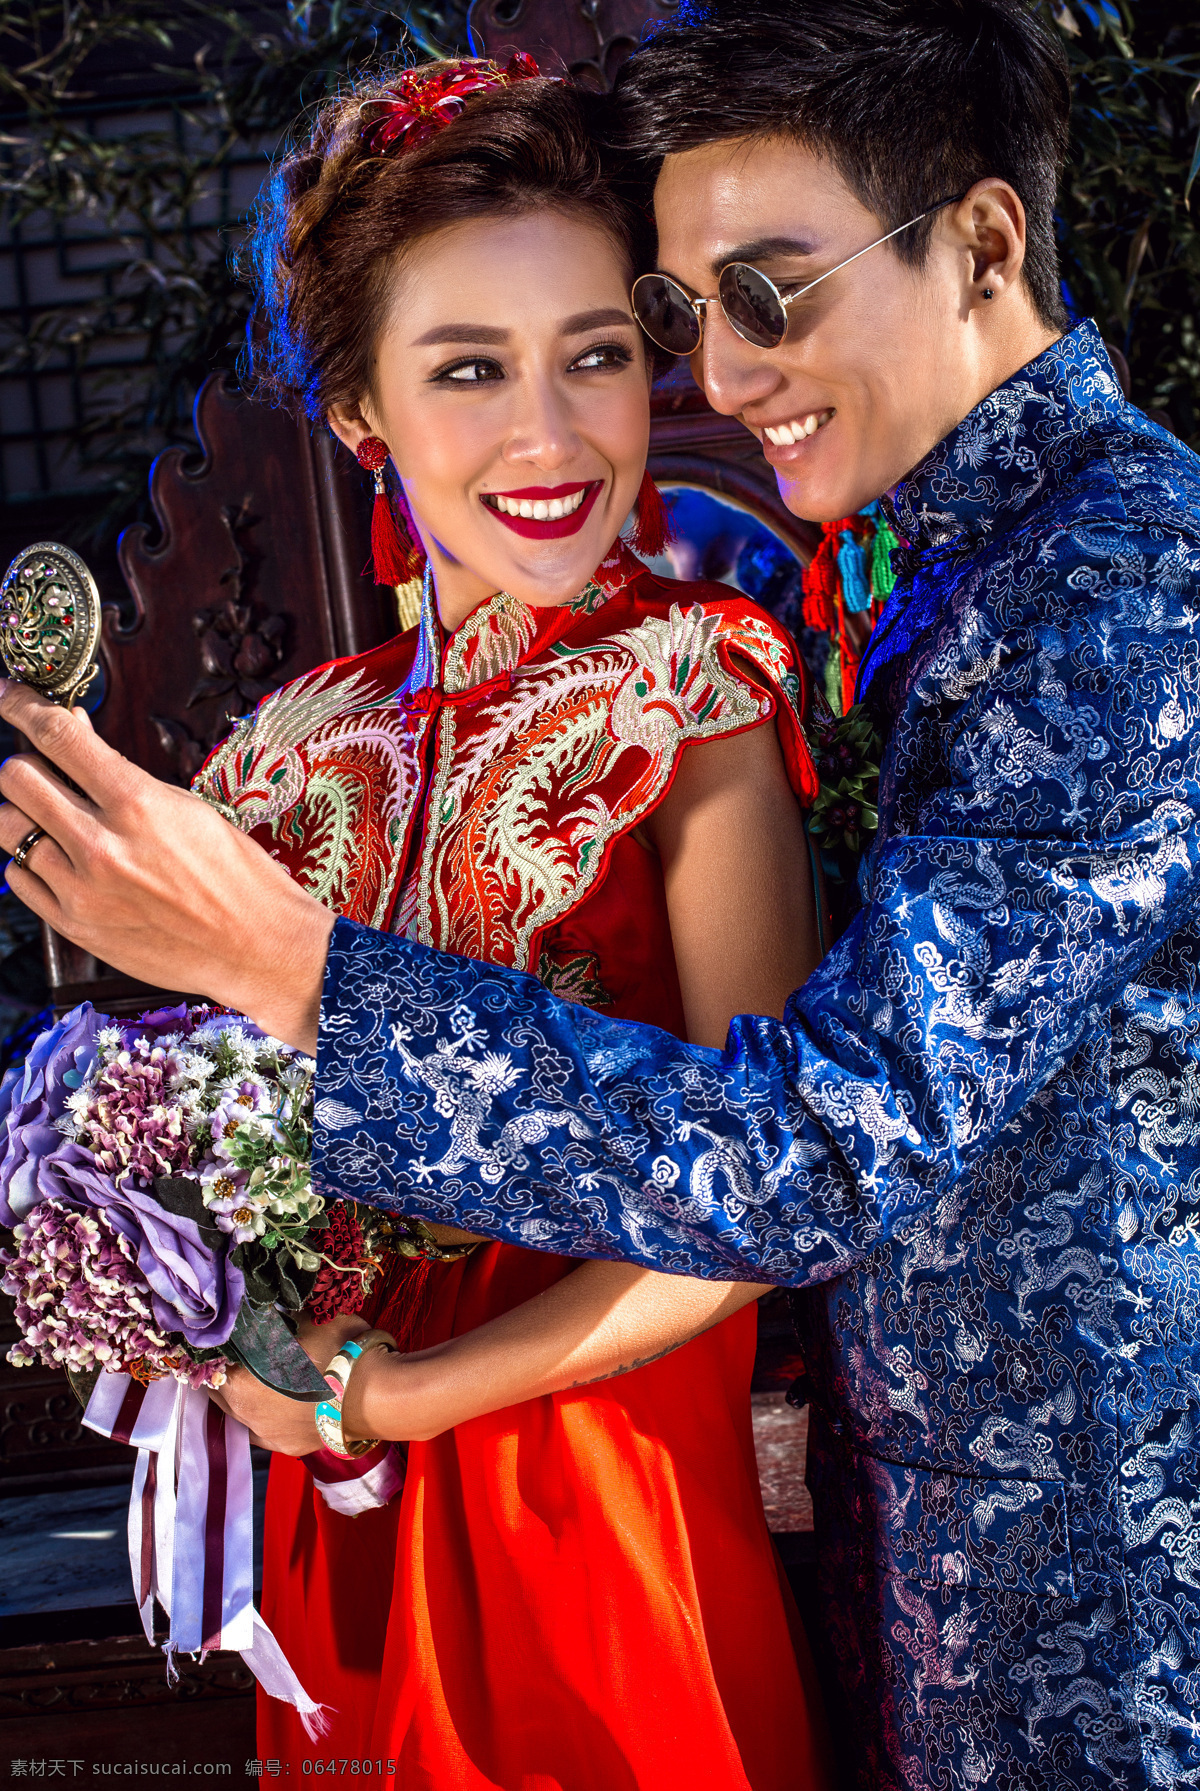 中式 古典 照镜子 新人 新人情侣 新婚夫妻 新郎新娘 帅哥美女 婚纱照 婚纱摄影 写真摄影 情侣图片 人物图片